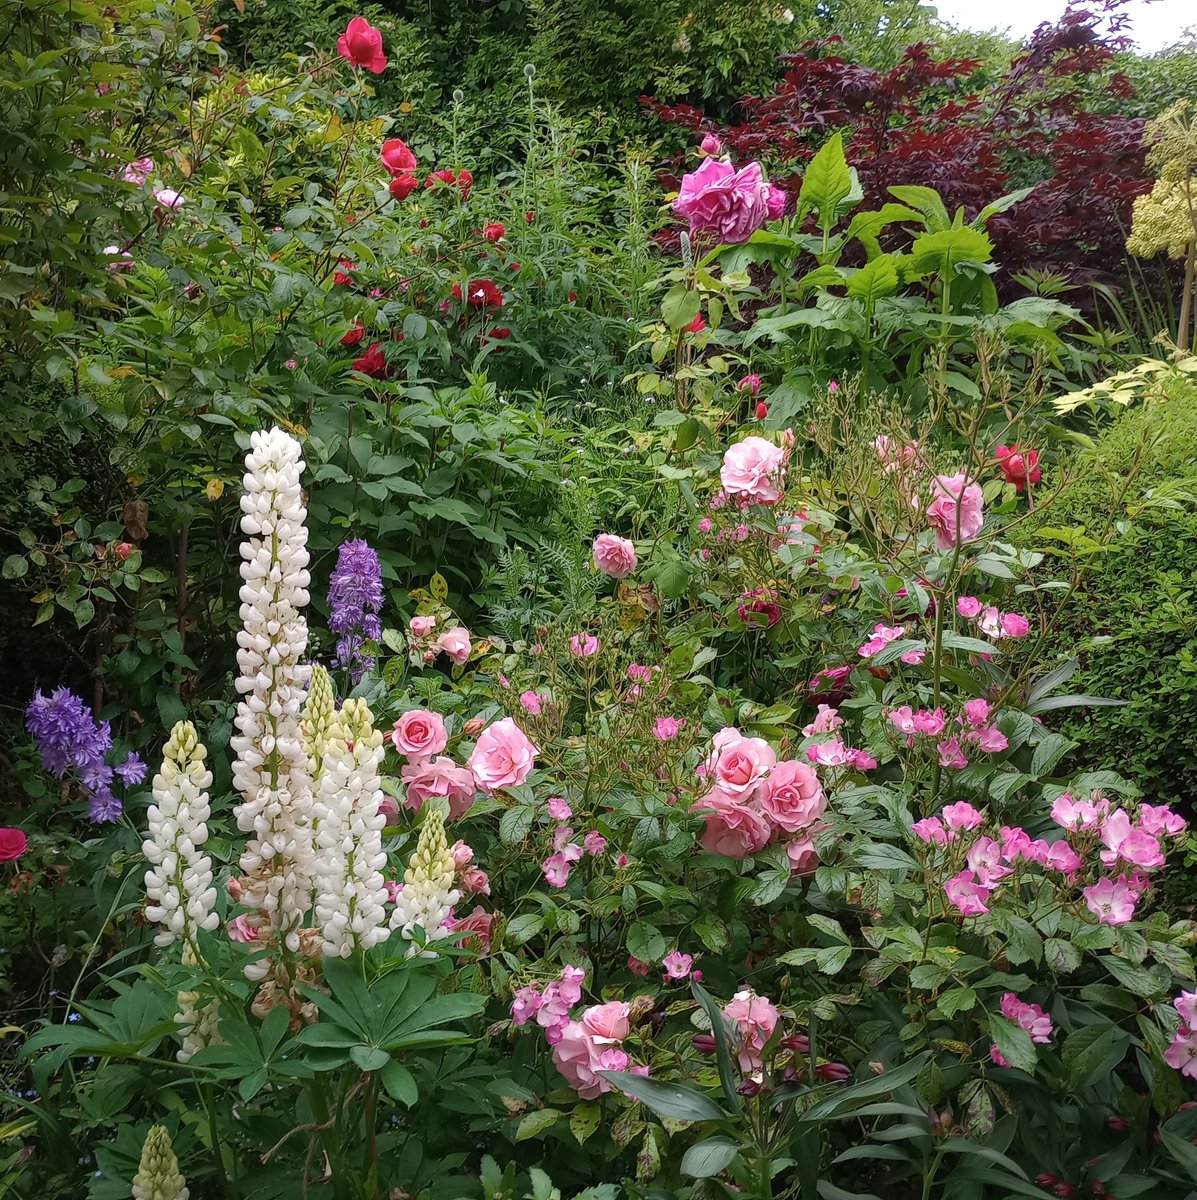 The Pink Garden today. #roses #junegarden